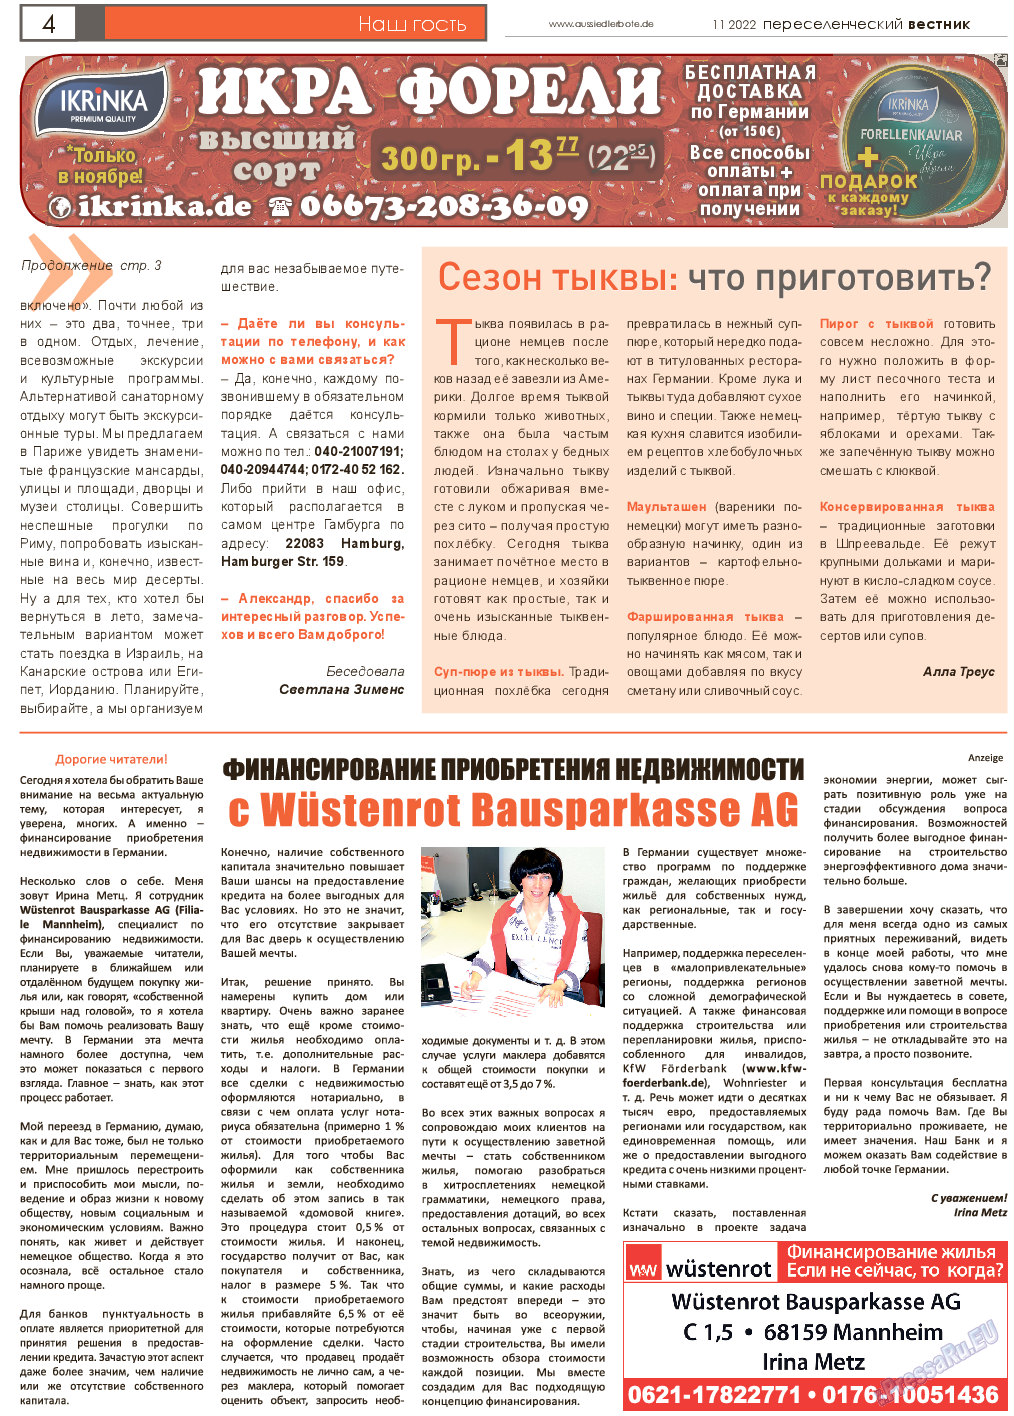 Переселенческий вестник, газета. 2022 №11 стр.4